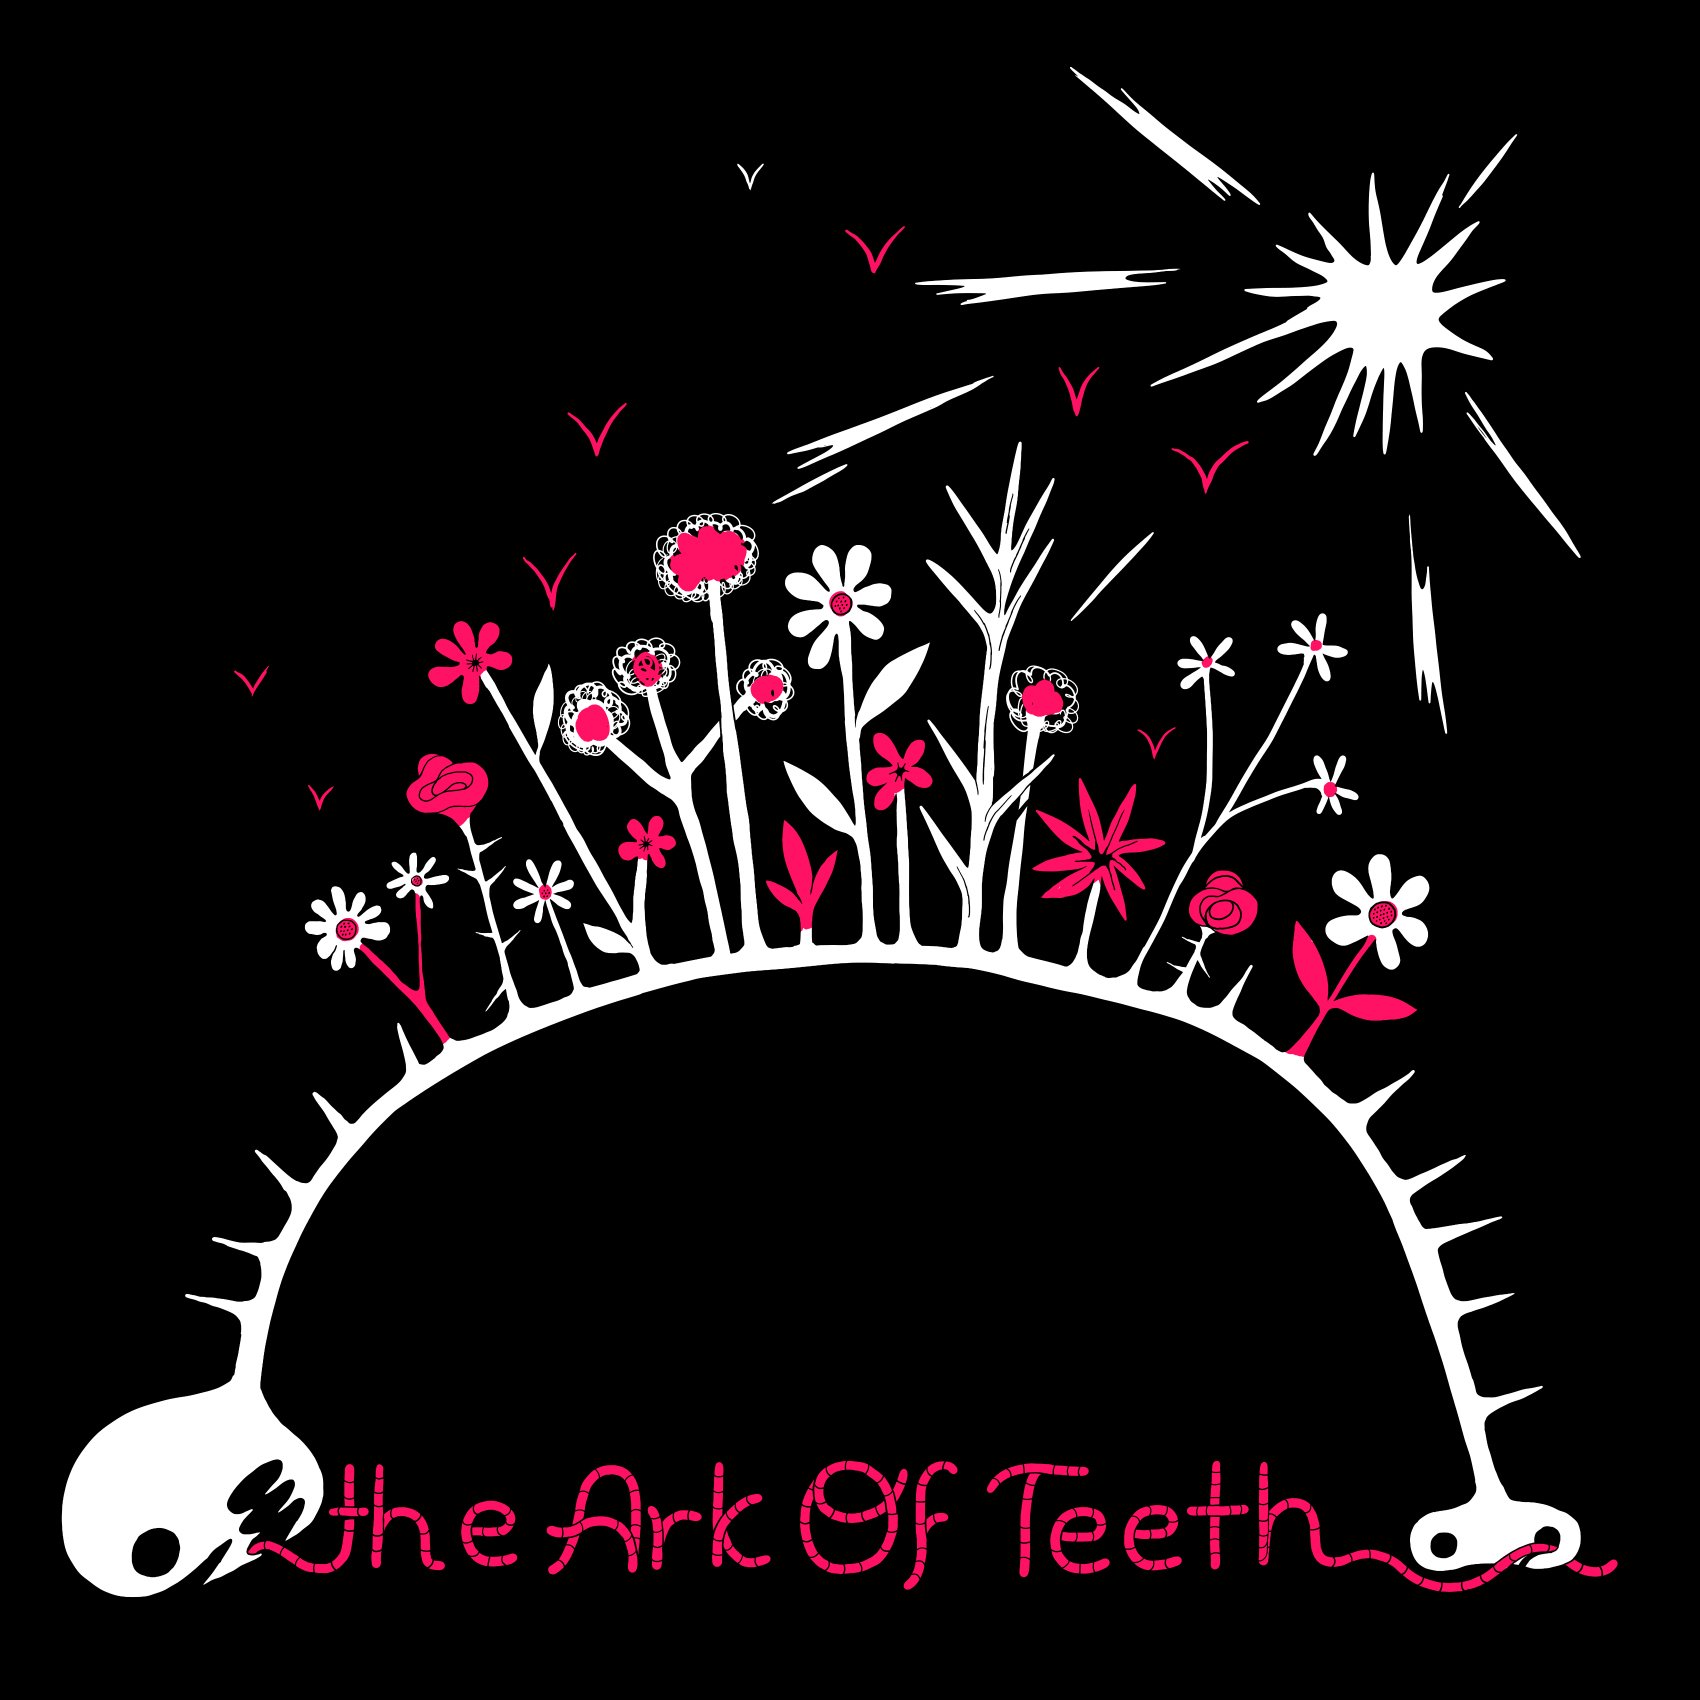 "Ark Of Teeth"